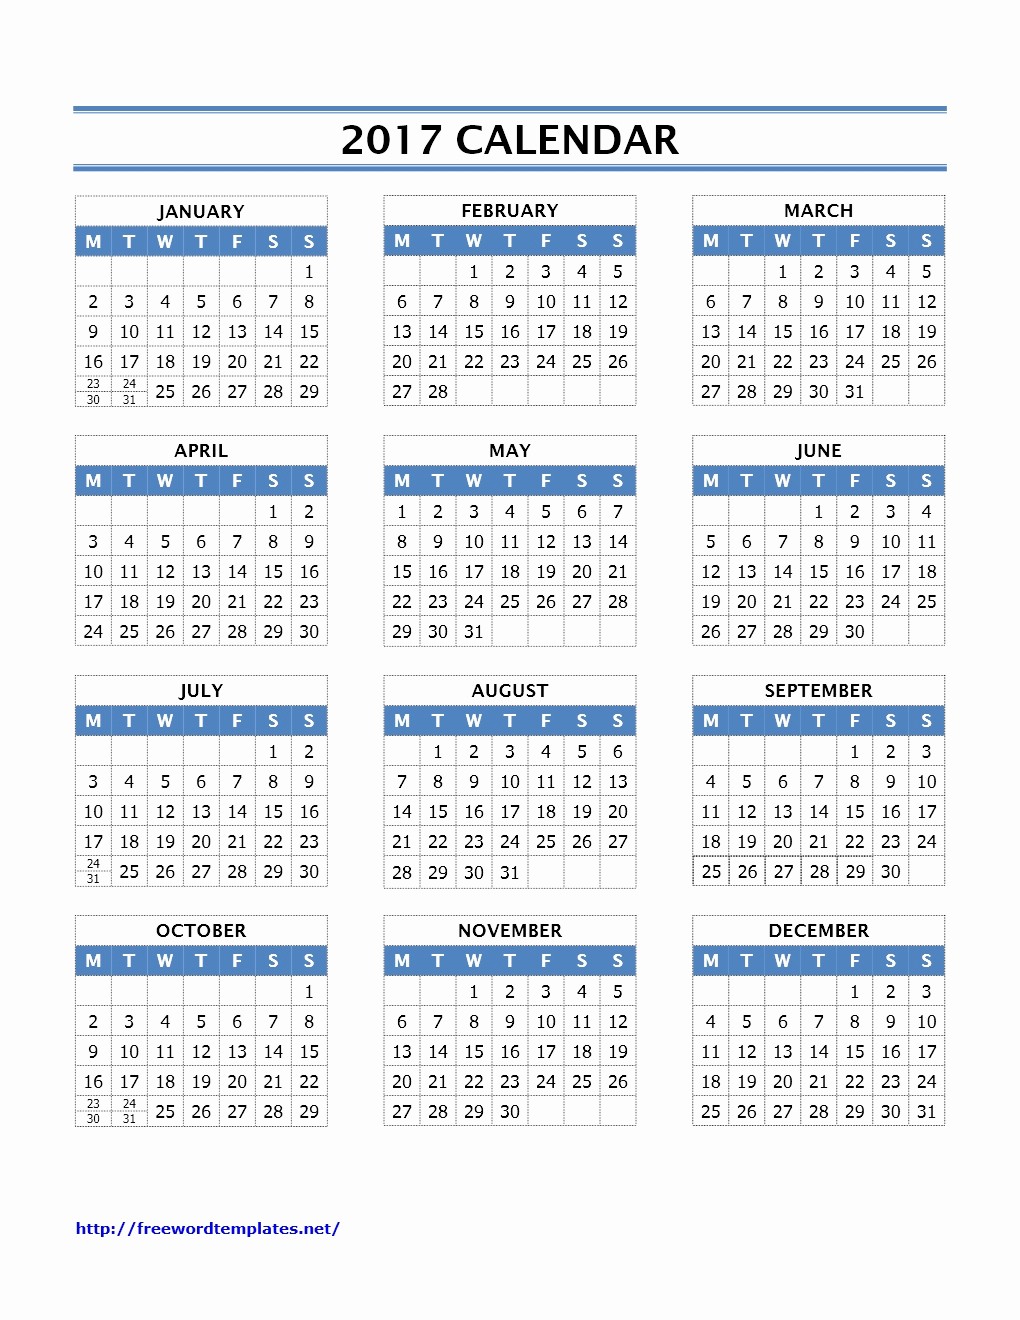 2016 2017 School Calendar Template Inspirational Calendar Archives